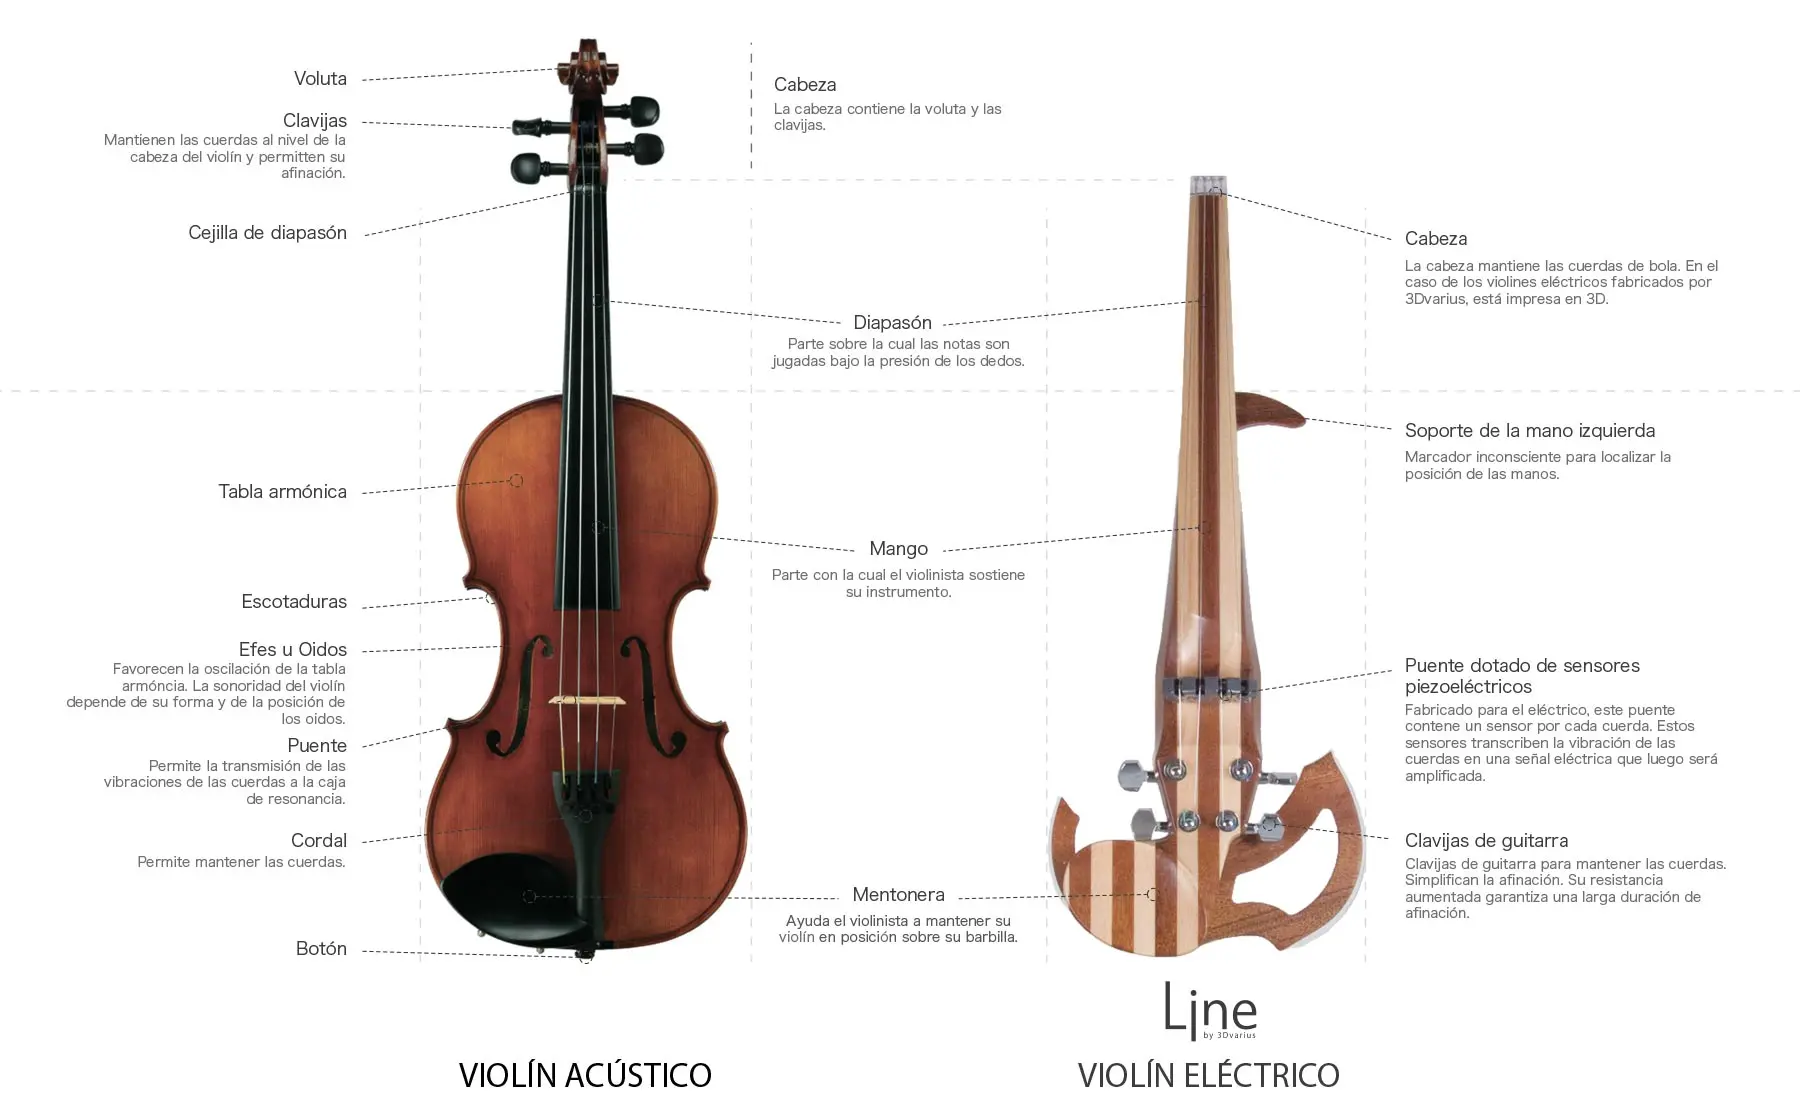 duracion del sonido del violin - Cuál es la duración del sonido